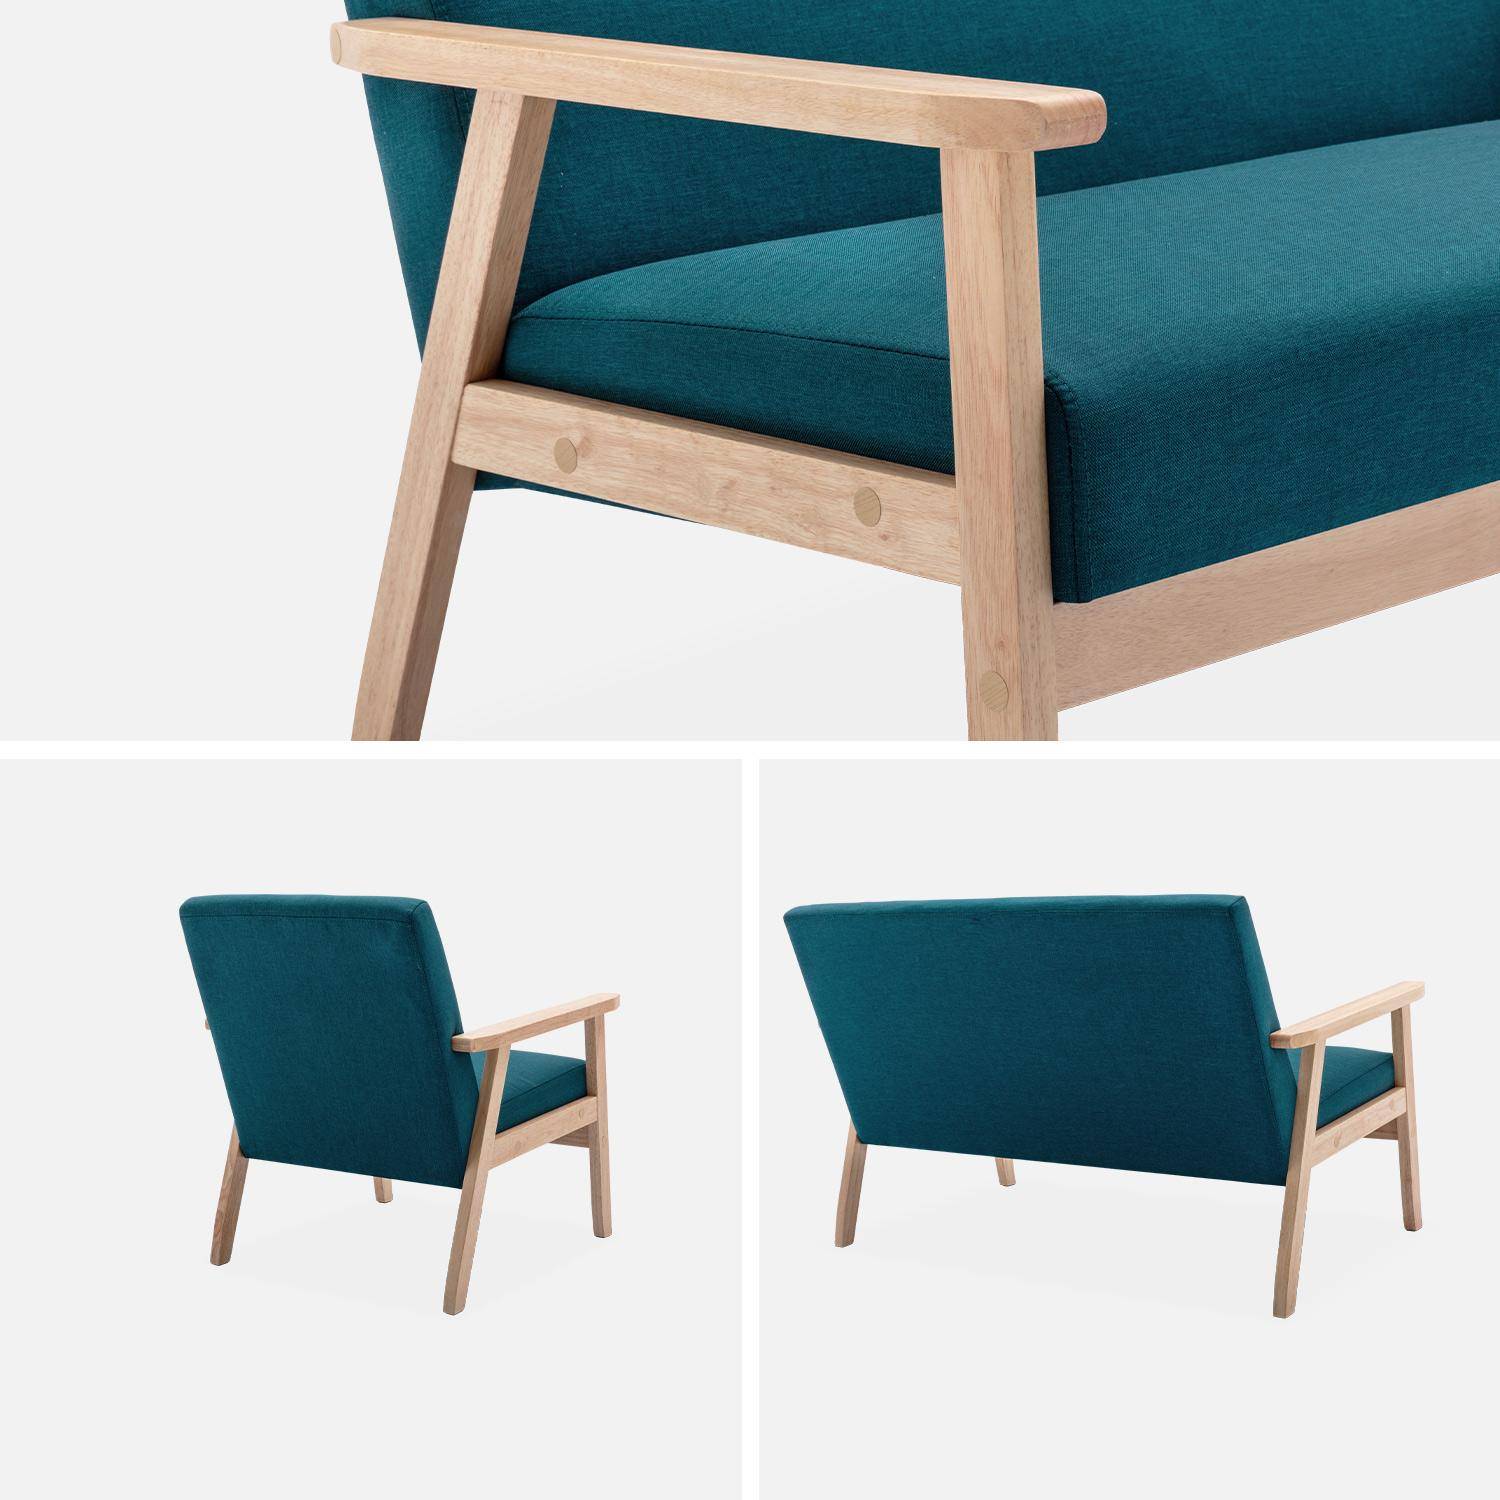 Banco y sillón escandinavos de madera y tela azul petróleo L 114 x A 69,5 x Alt 73cm Photo5